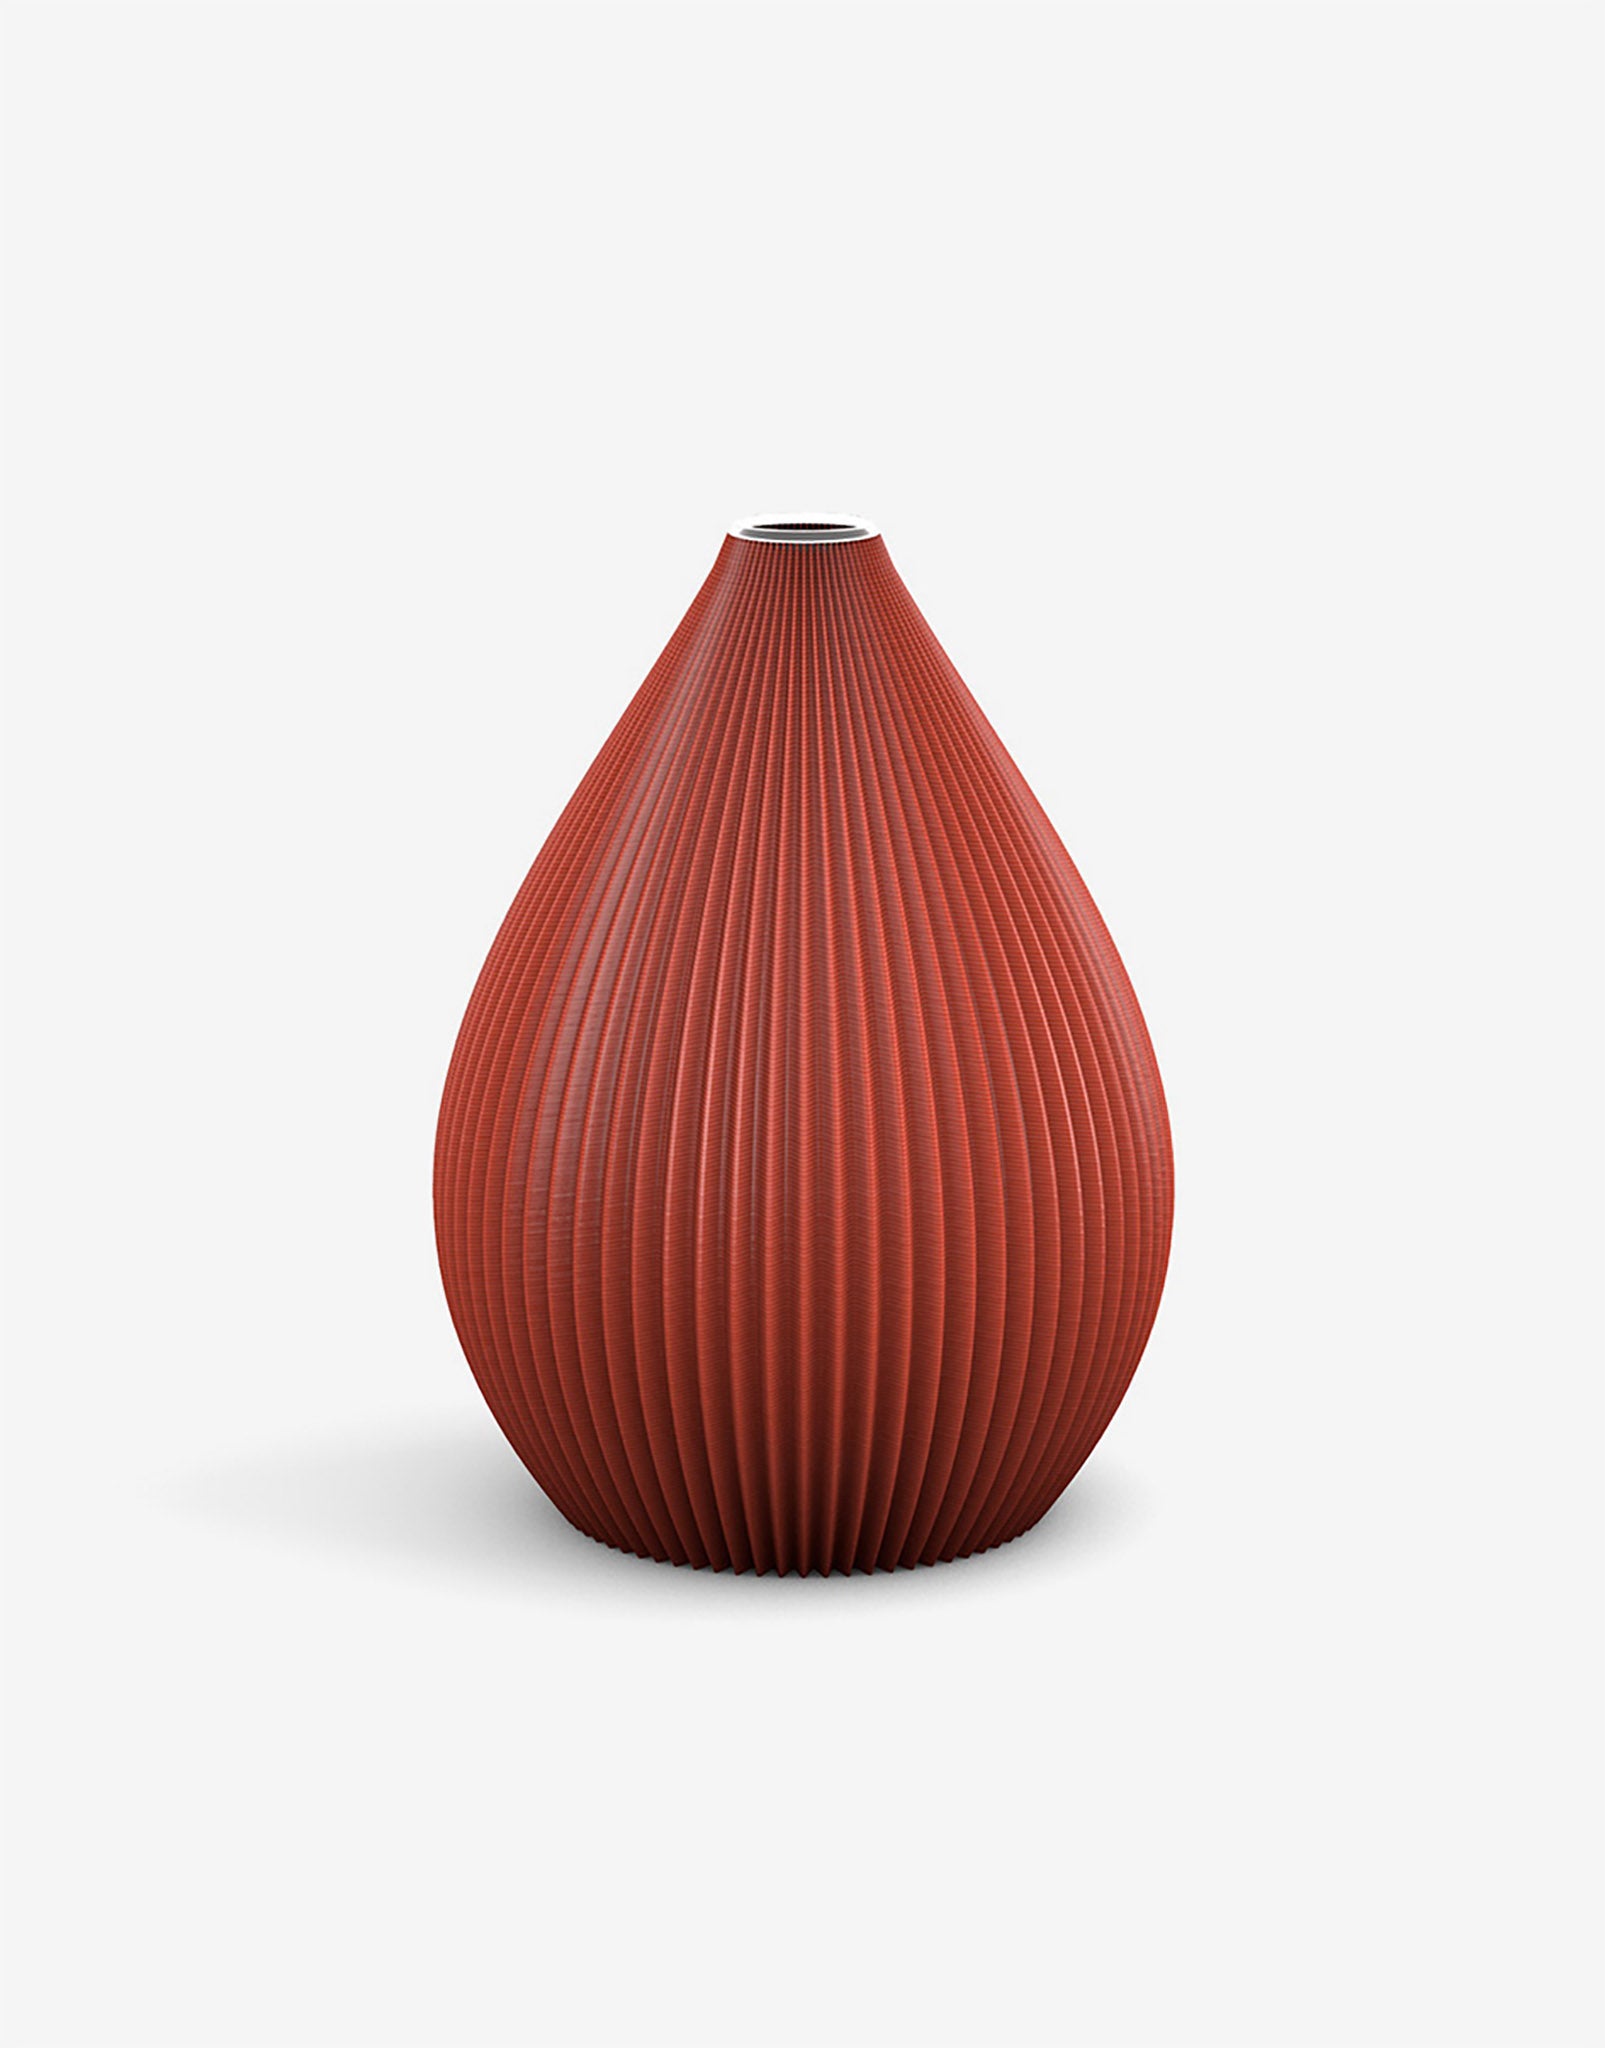 Ovale 3D Druck Kunststoff Vase Balloon von Recozy mit Glaseinsatz, Farbe: Ruby Red, Größe: S